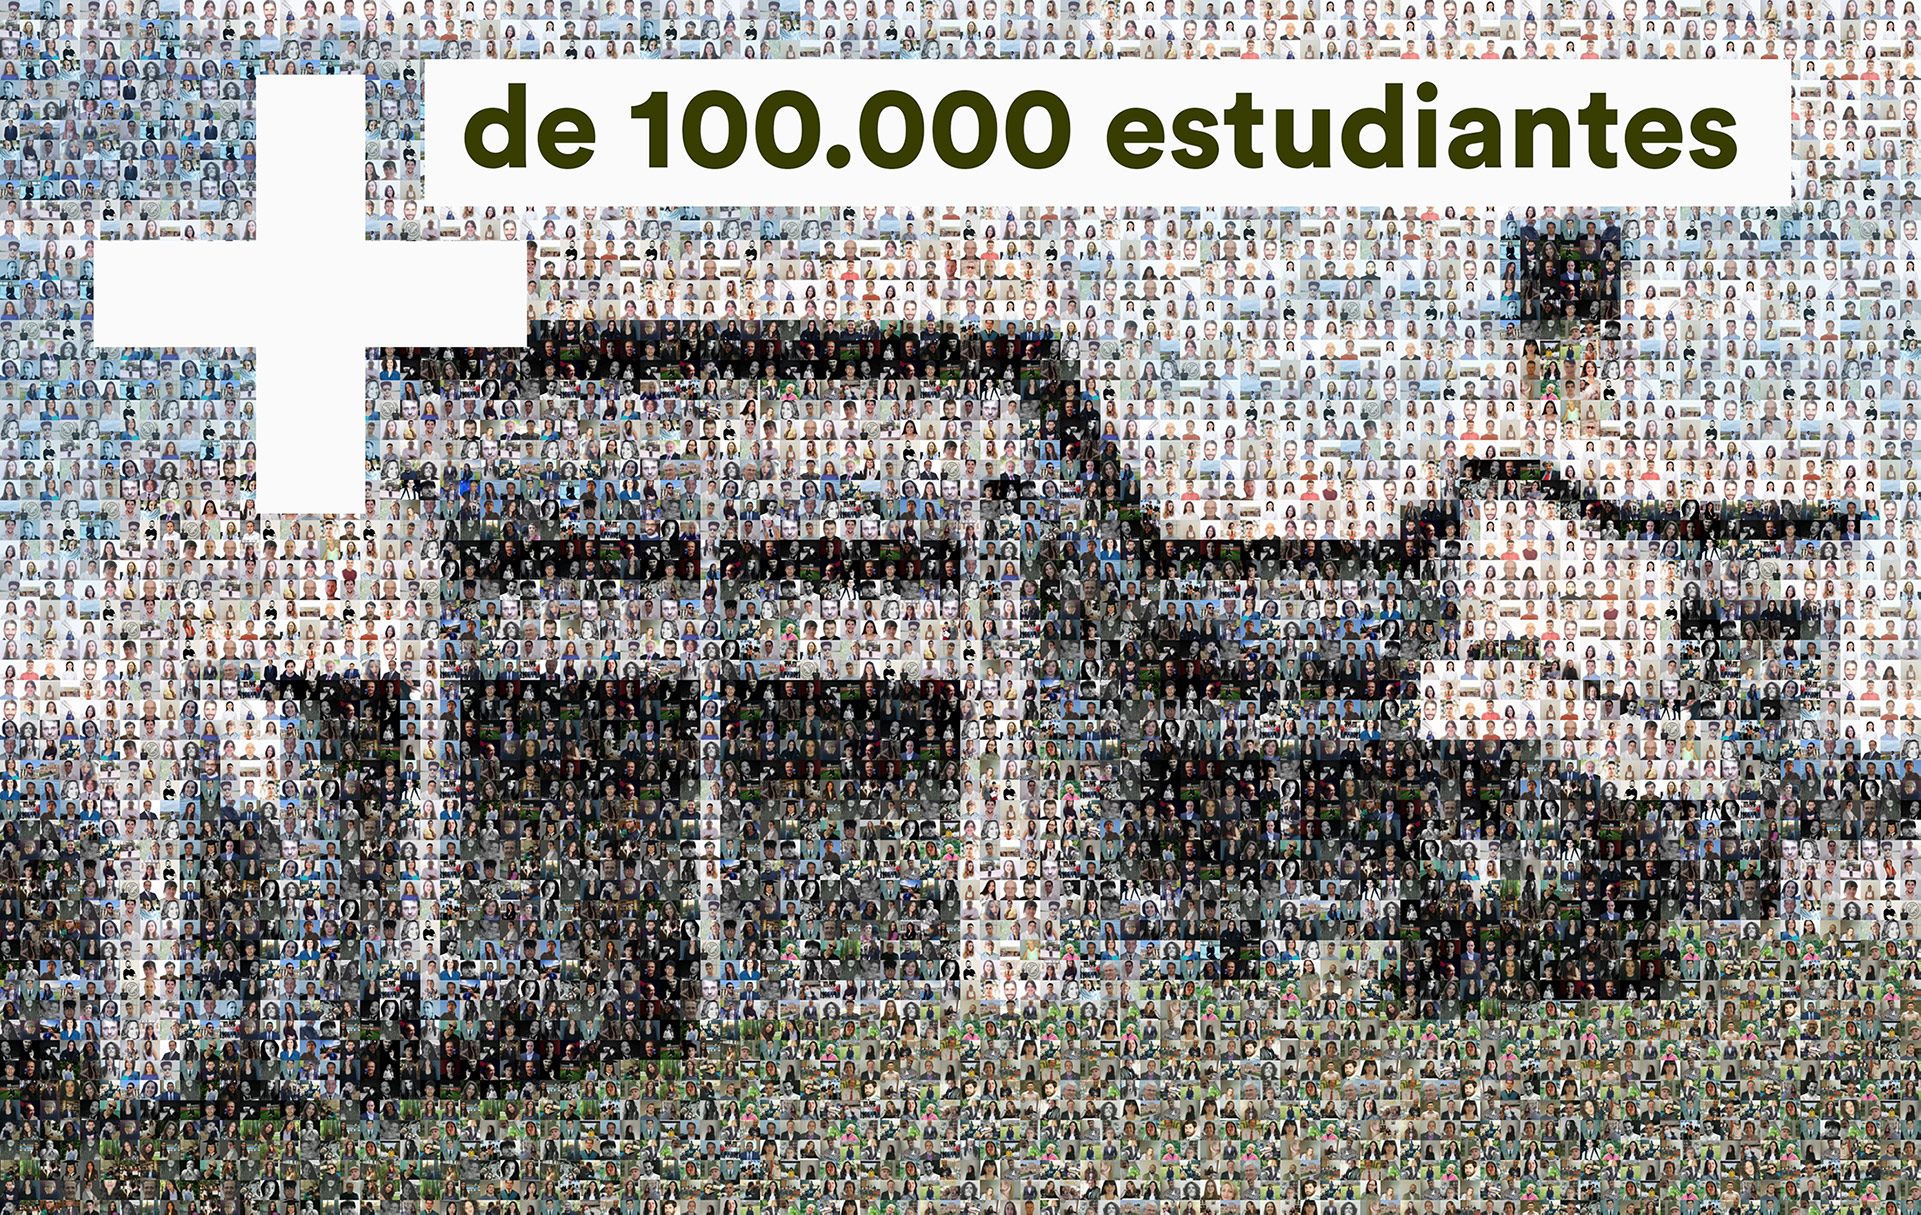 Ya son más de 100.000 estudiantes los que han pasado por la Facultad de Ciencias de la Información desde 1971